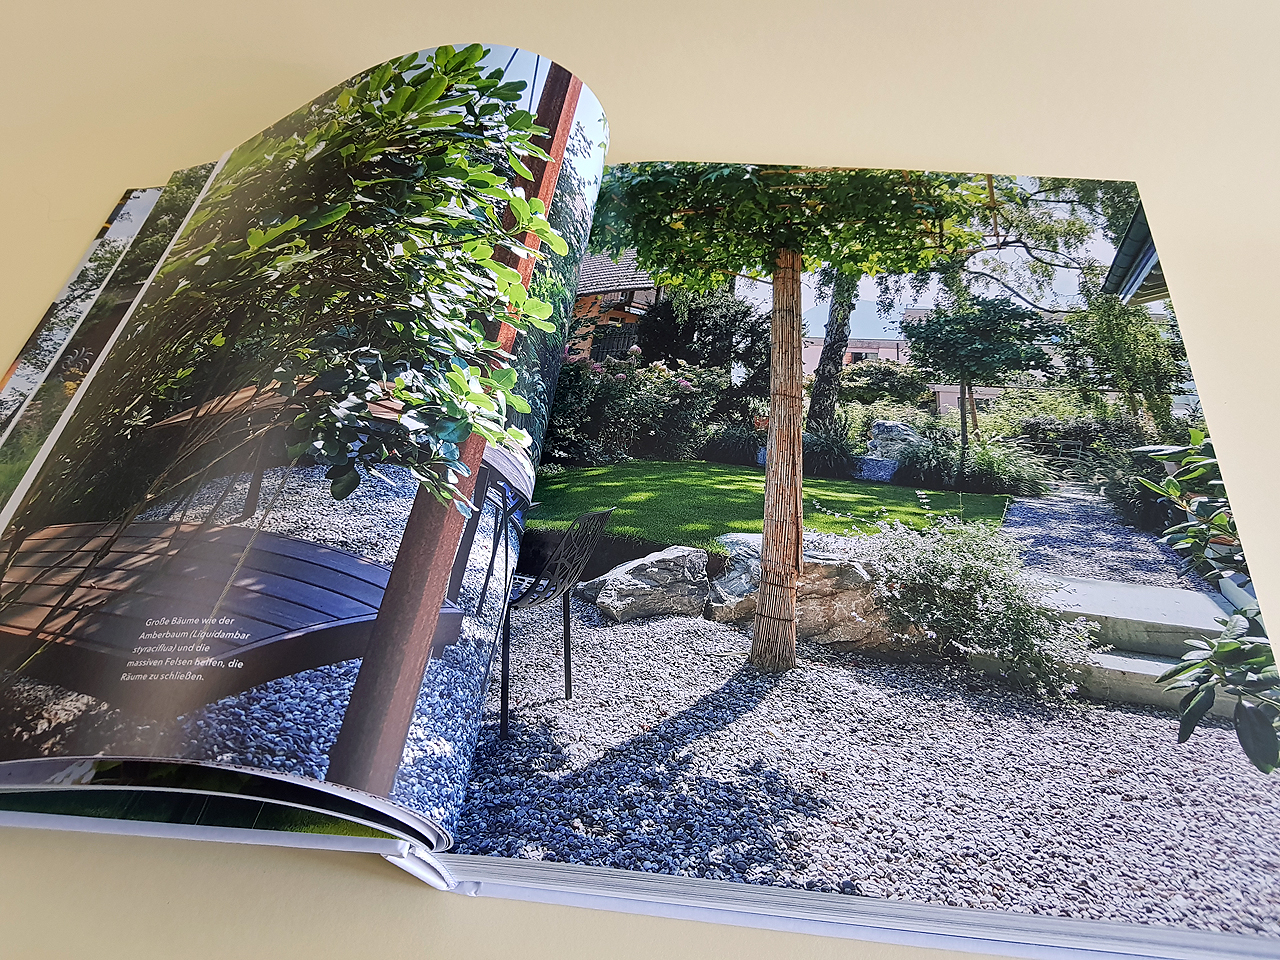 Aufgeschlagene Doppelseite des Buches „Gärten des Jahres 2022“. Zu sehen ist ein großer Garten mit jeder Menge Bäumen und Pflanzen sowie einer Holzbank links im Bild. Auf der rechten Seite sieht man einen Weg mit weißen Schottersteinen.